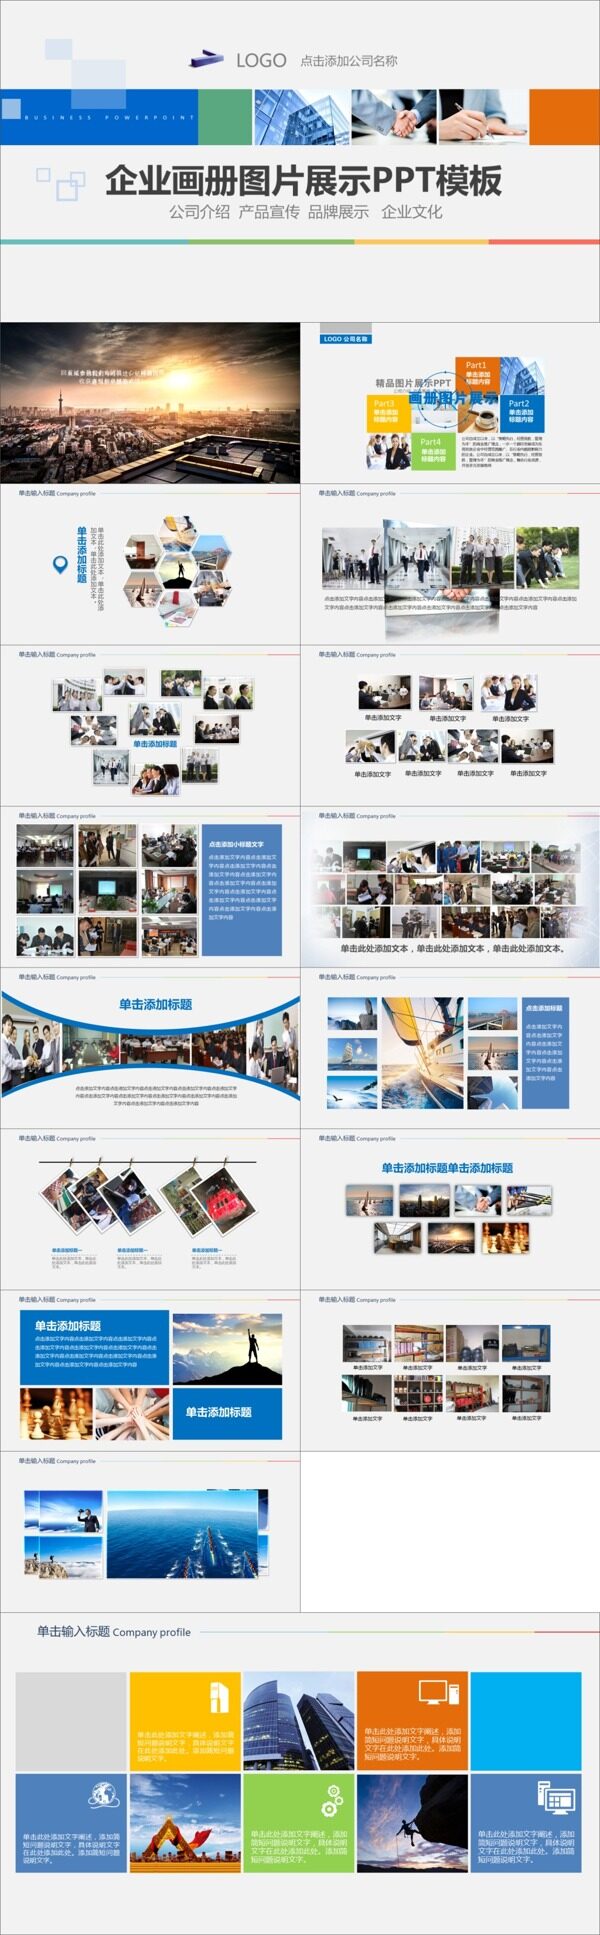 企业画册图片展示PPT模板